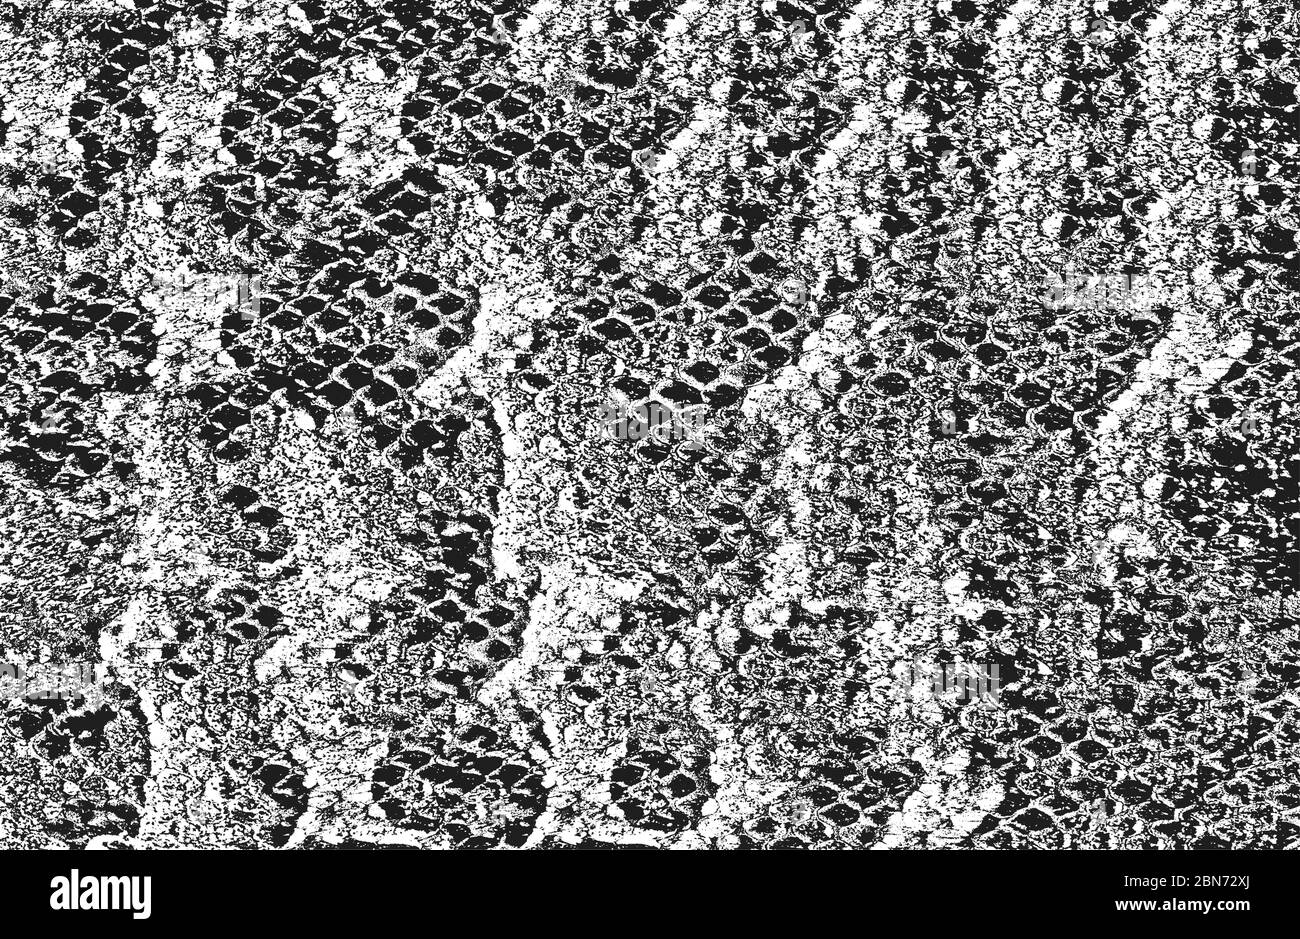 Peau de serpent de détresse texture grunge. Illustration vectorielle EPS 8. Fond noir et blanc. Illustration de Vecteur